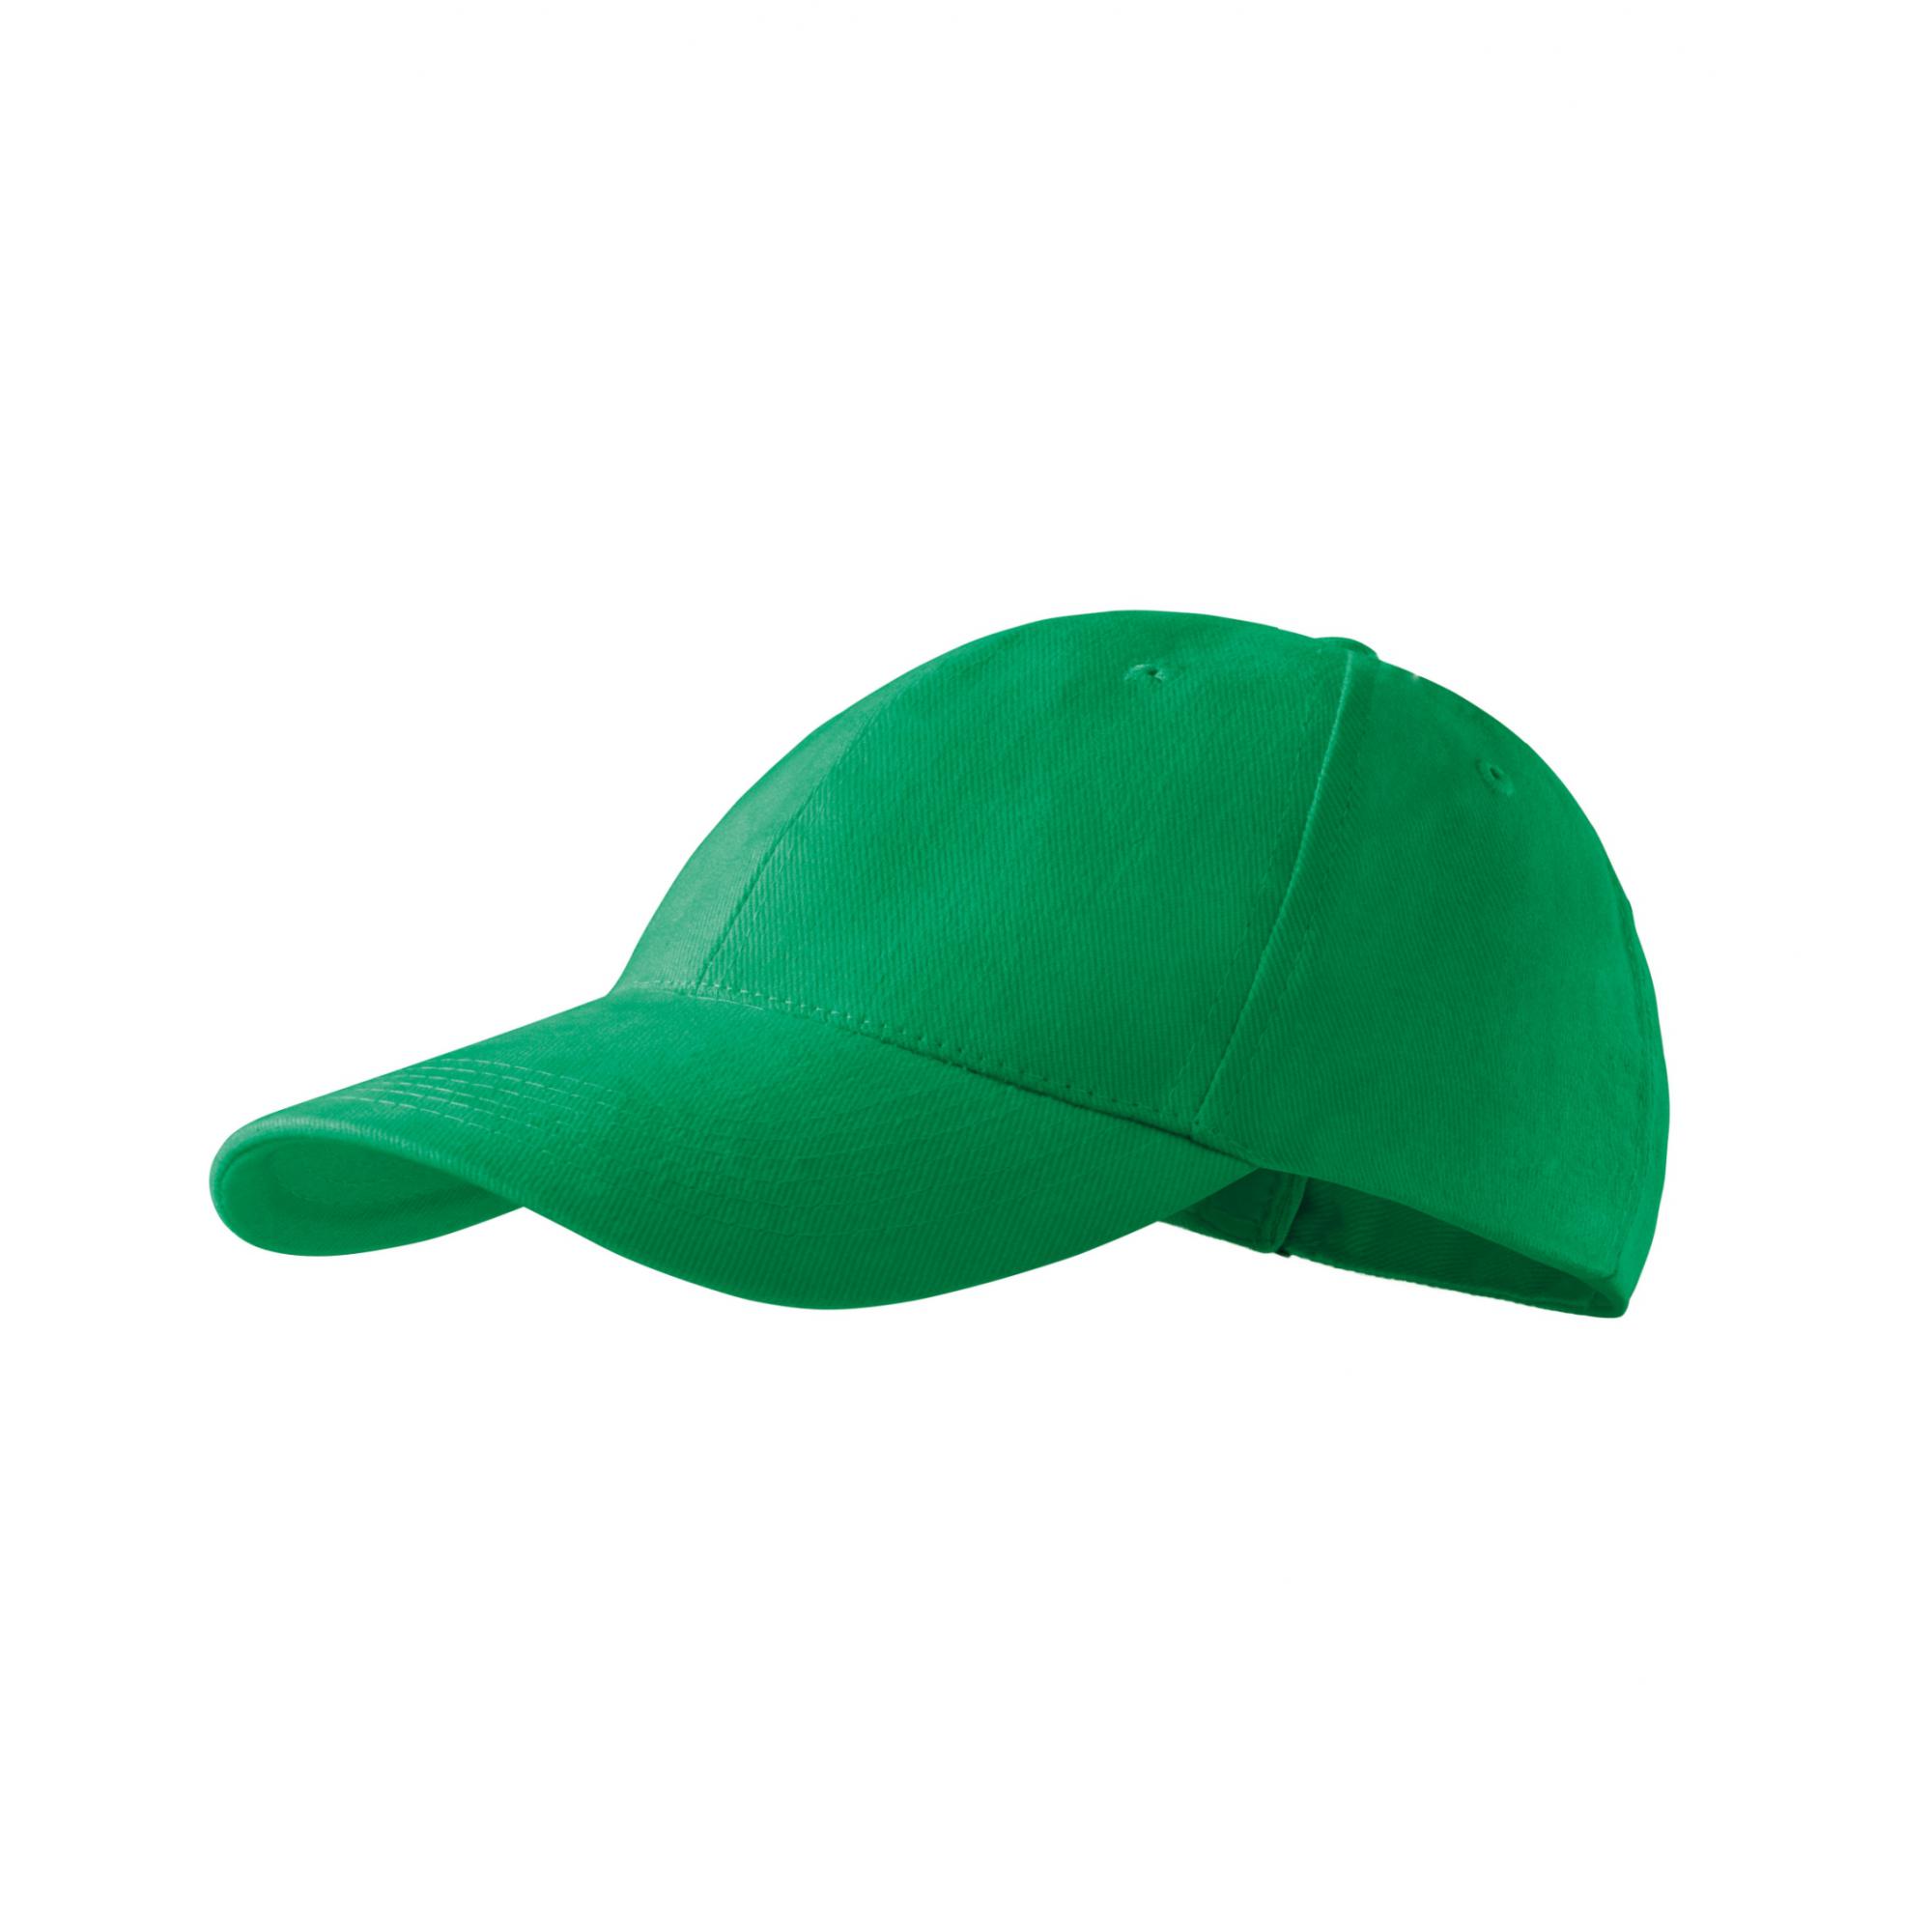 Şapcă unisex 6P 305 Verde mediu Marime universala